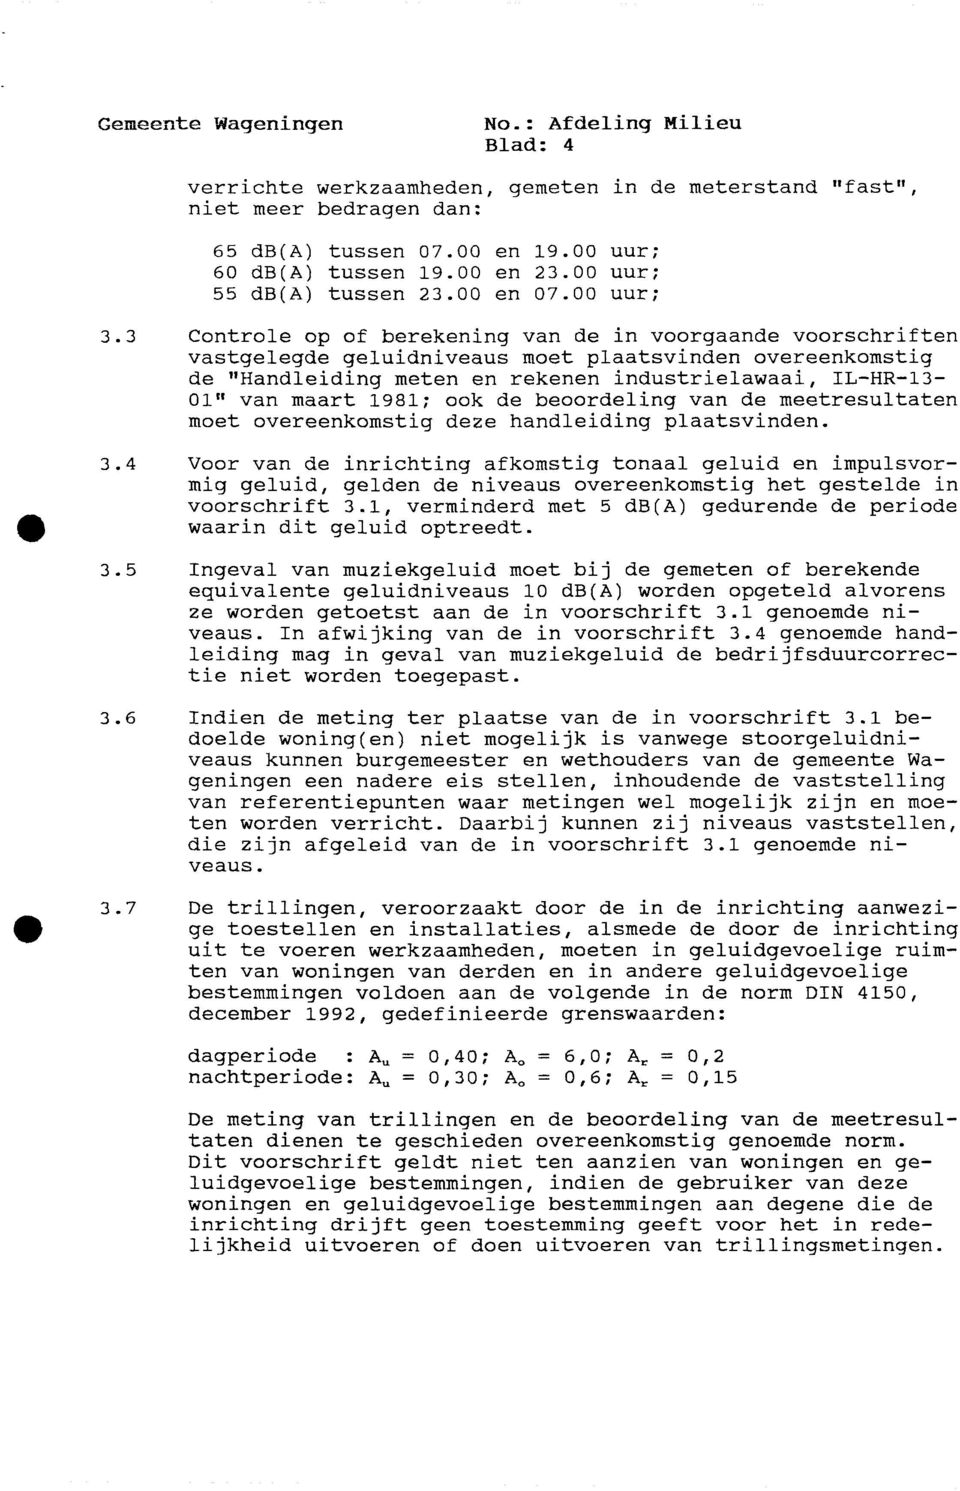 1981; ook de beoordeling van de meetresultaten moet overeenkomstig deze handleiding plaatsvinden. 3.